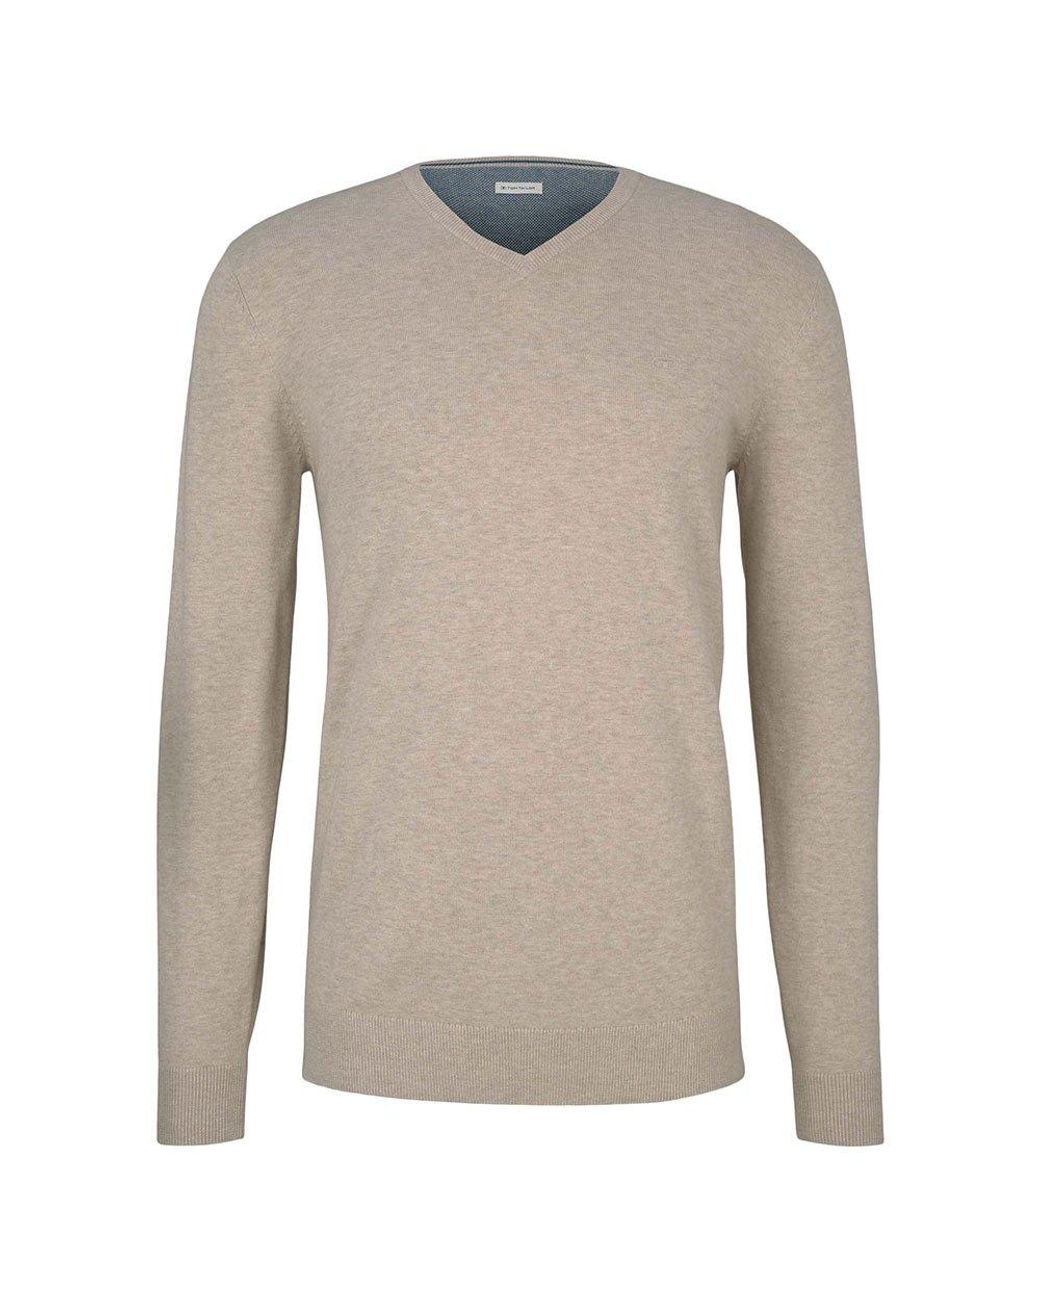 Tom Tailor Cotton Basic V Neck Sweater in Soft Sand Beige Melange (Natural)  for Men - Lyst